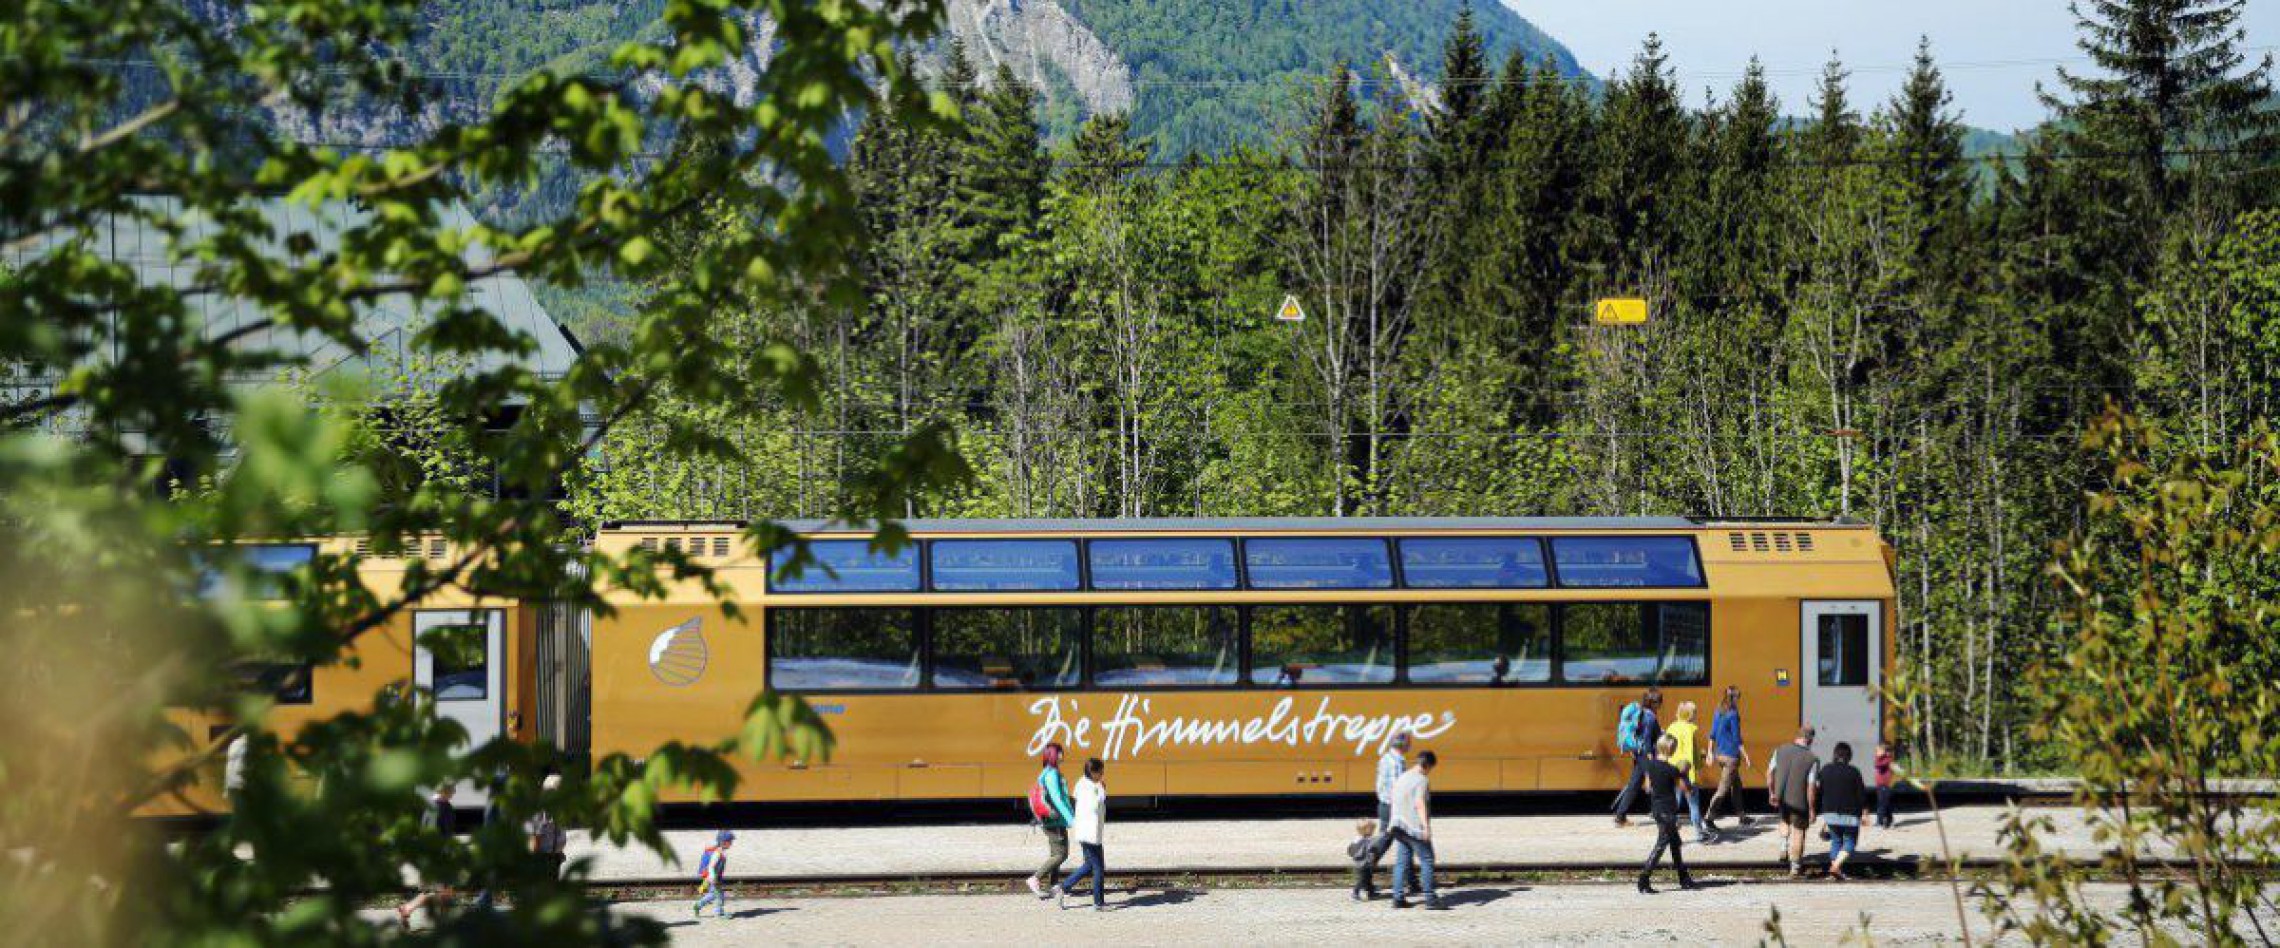 Der großflächig verglaste Panoramawagen ermöglicht einmalige Ausblicke in den Naturpark Ötscher-Tormäuer. 